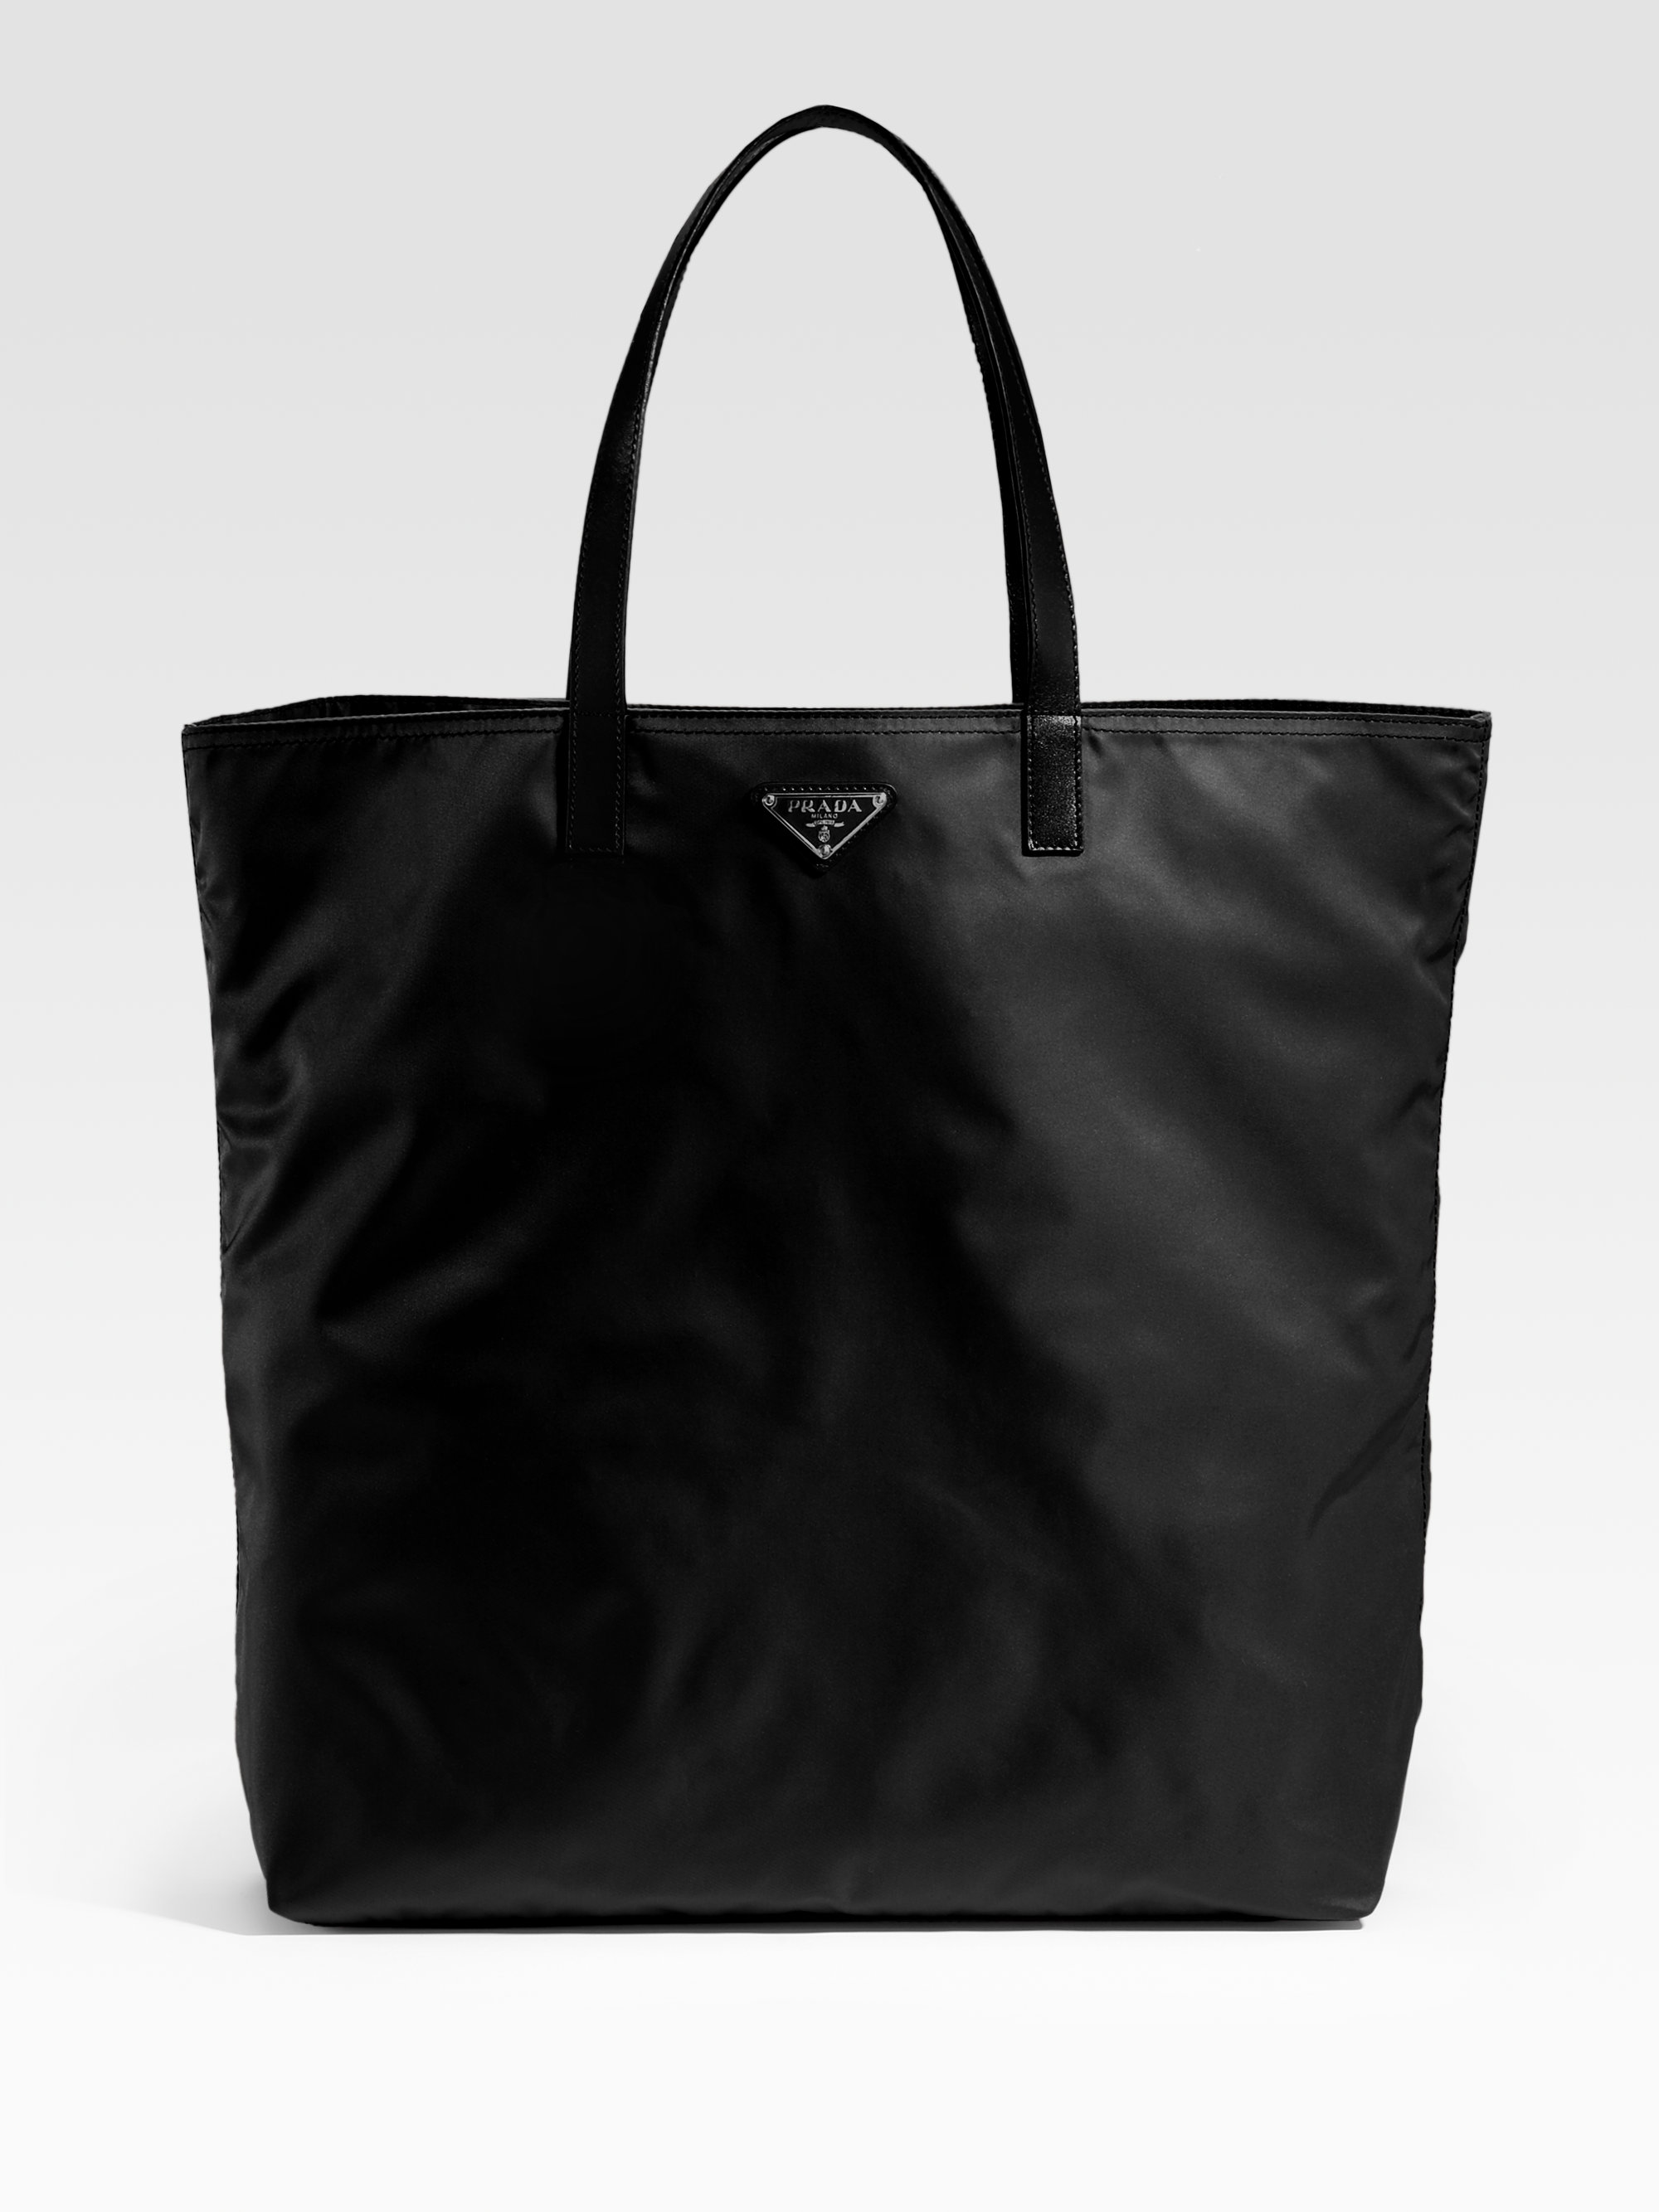 Prada Vela Nylon Tote Bag in Black - Lyst